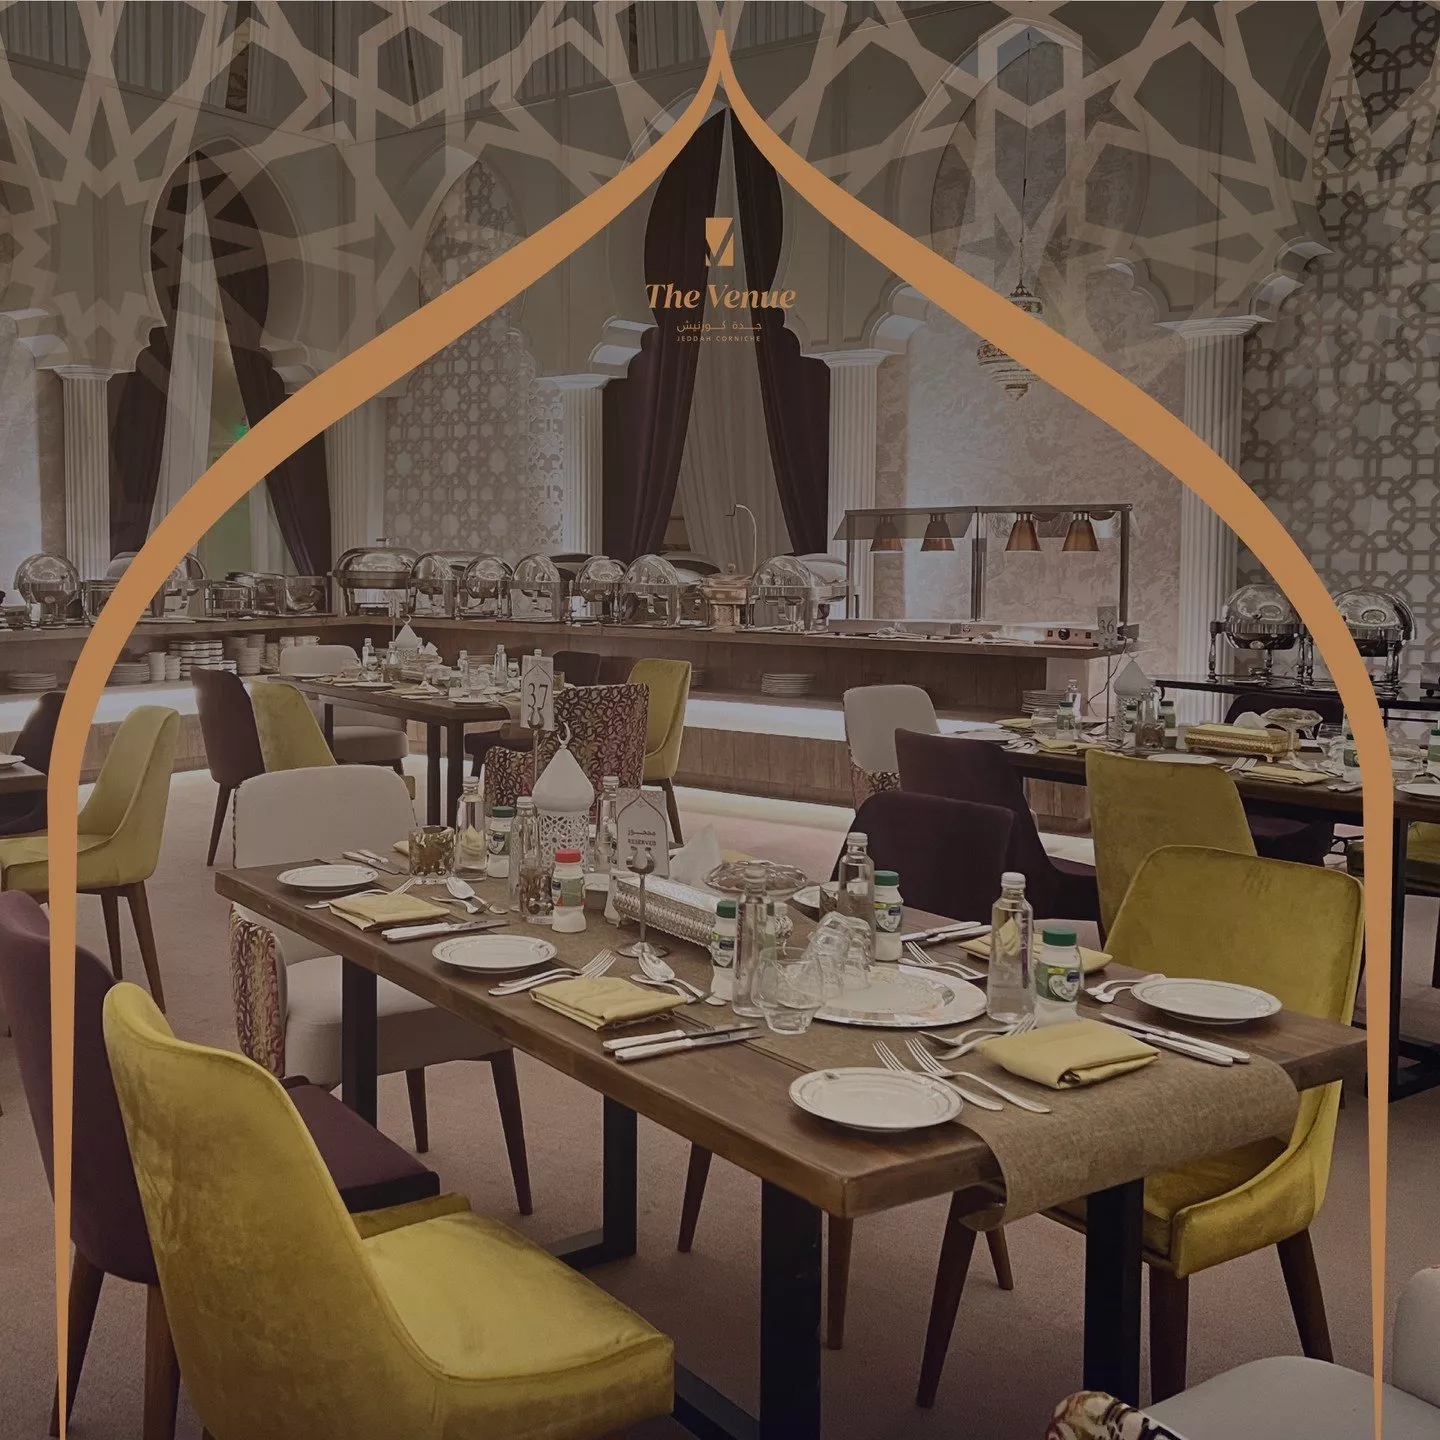 أبرز خيم رمضان في جدة لعام 2023، تقدّم بوفيه للإفطار والسحور